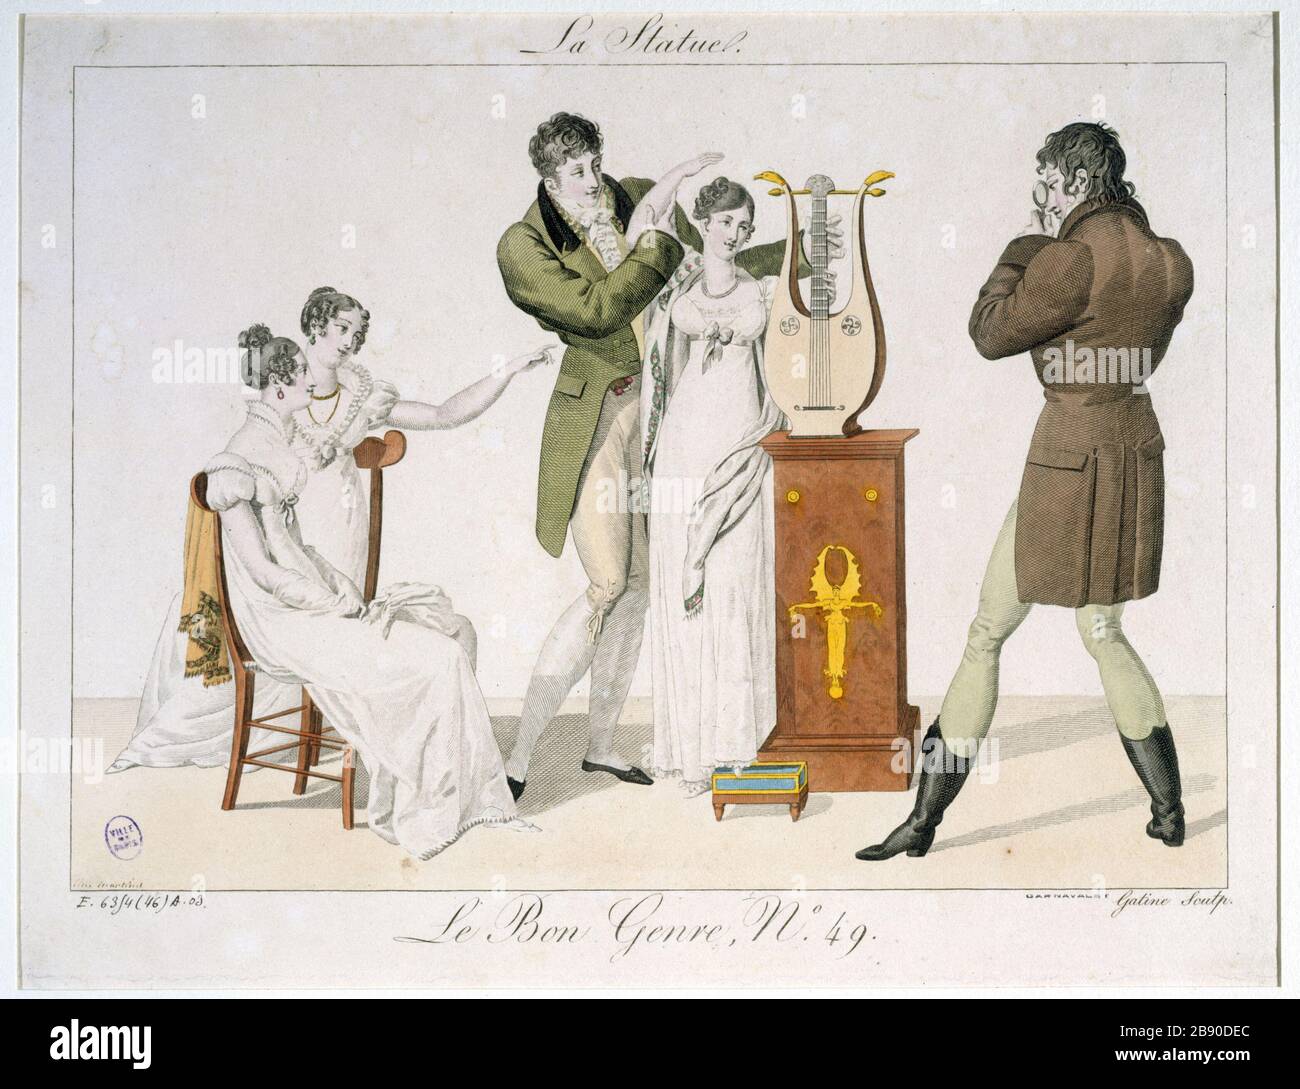 GESCHLECHT GUT - DIE STATUE Georges-Jacques Gatine. "Le Bon Genre numéro 49 : la Statue - 1811". Paris, musée Carnavalet. Stockfoto